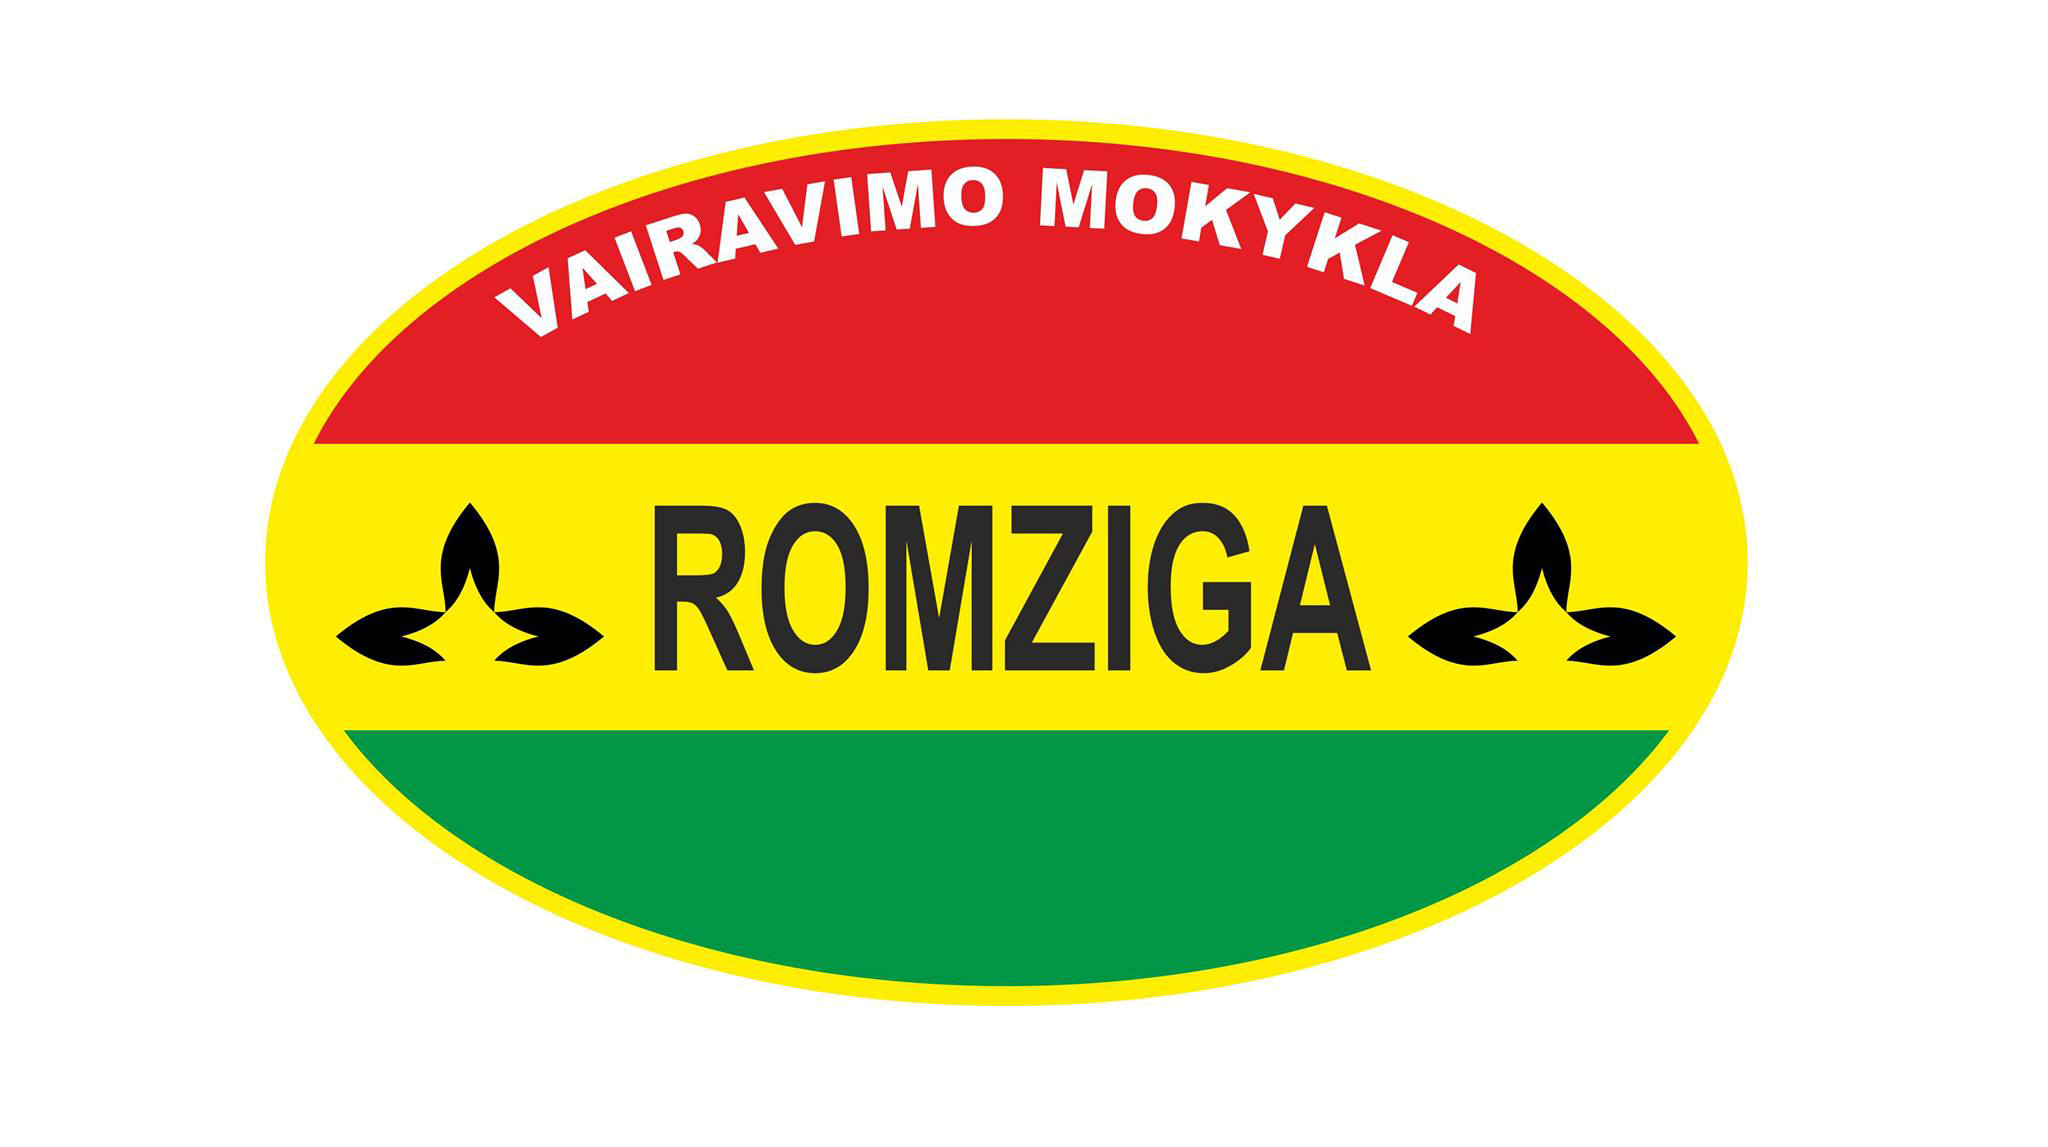 Romziga